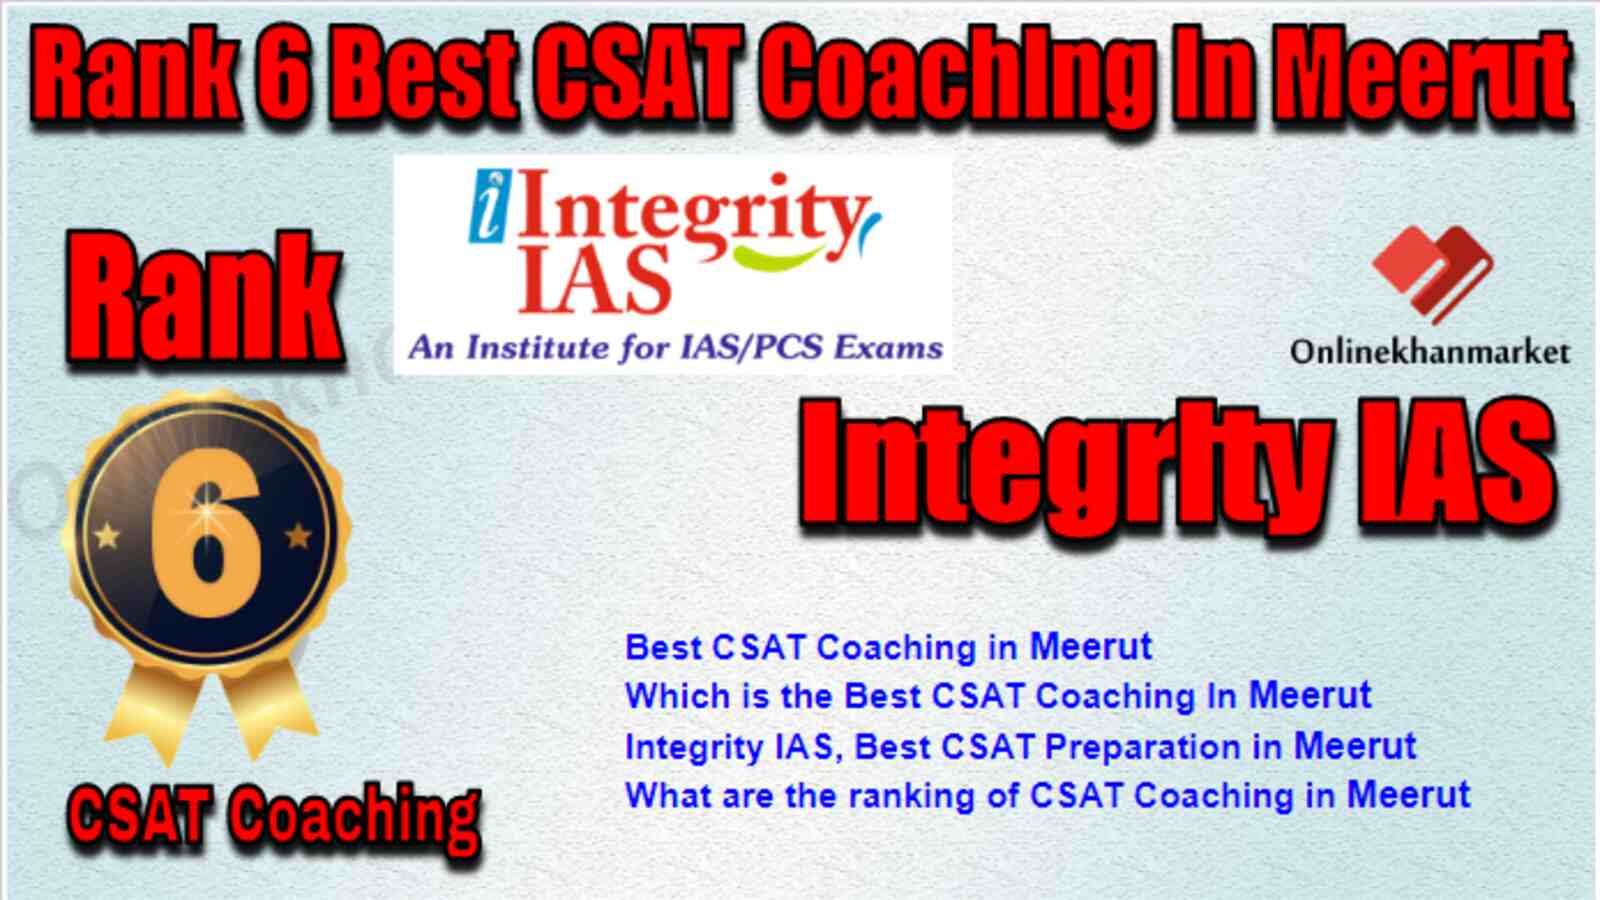 Rank 6 Best CSAT Coaching in Meerut